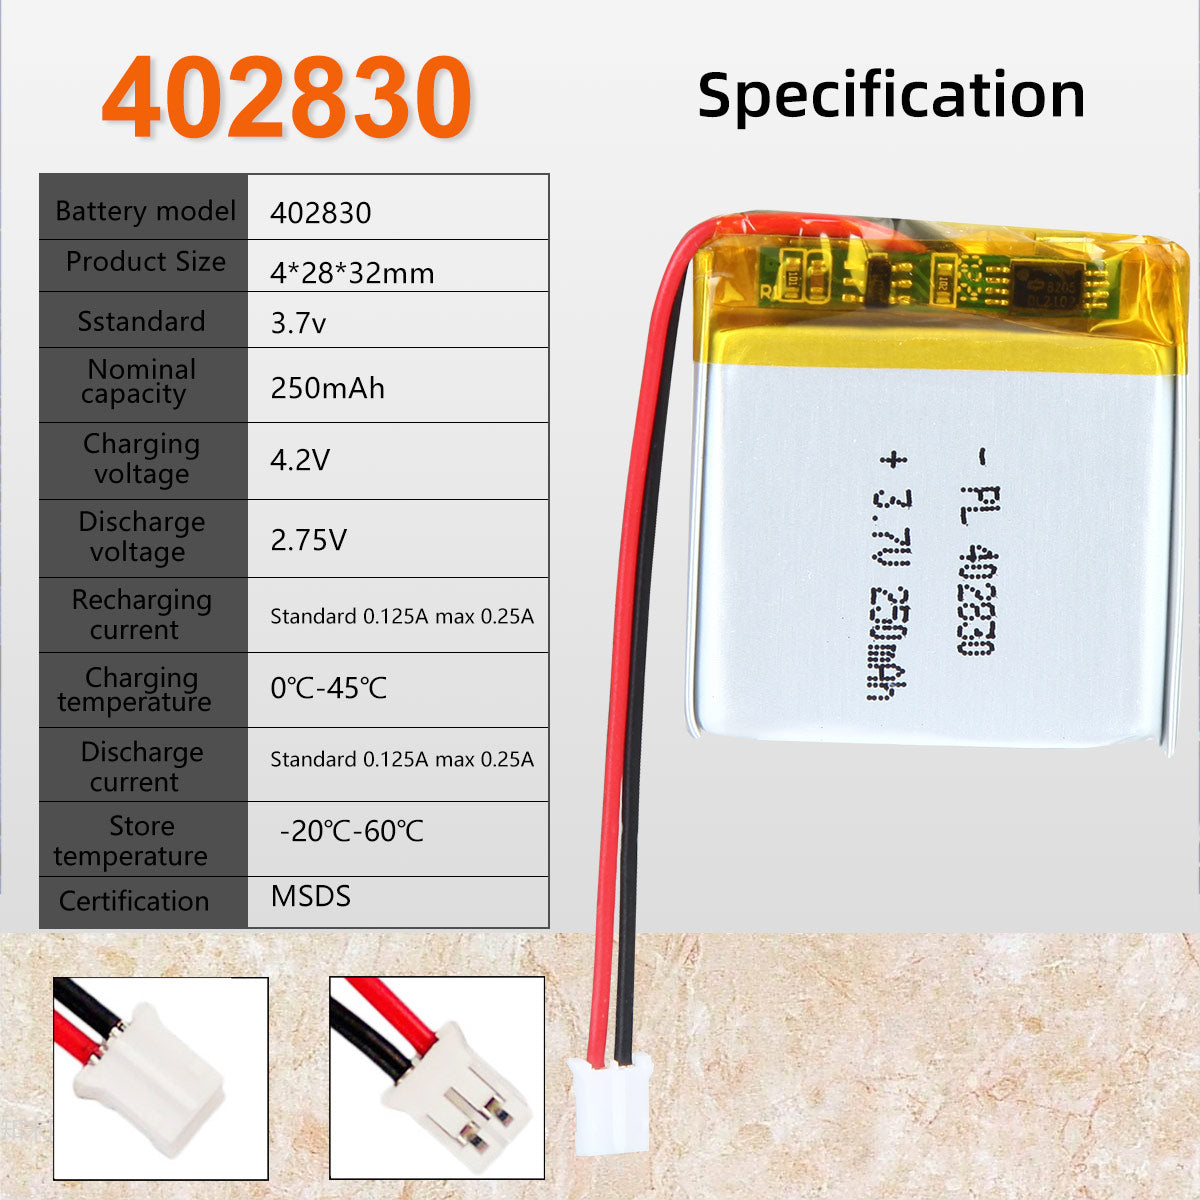 3.7V 250mAh 402830 Batterie Lithium Polymère Rechargeable Longueur 32mm